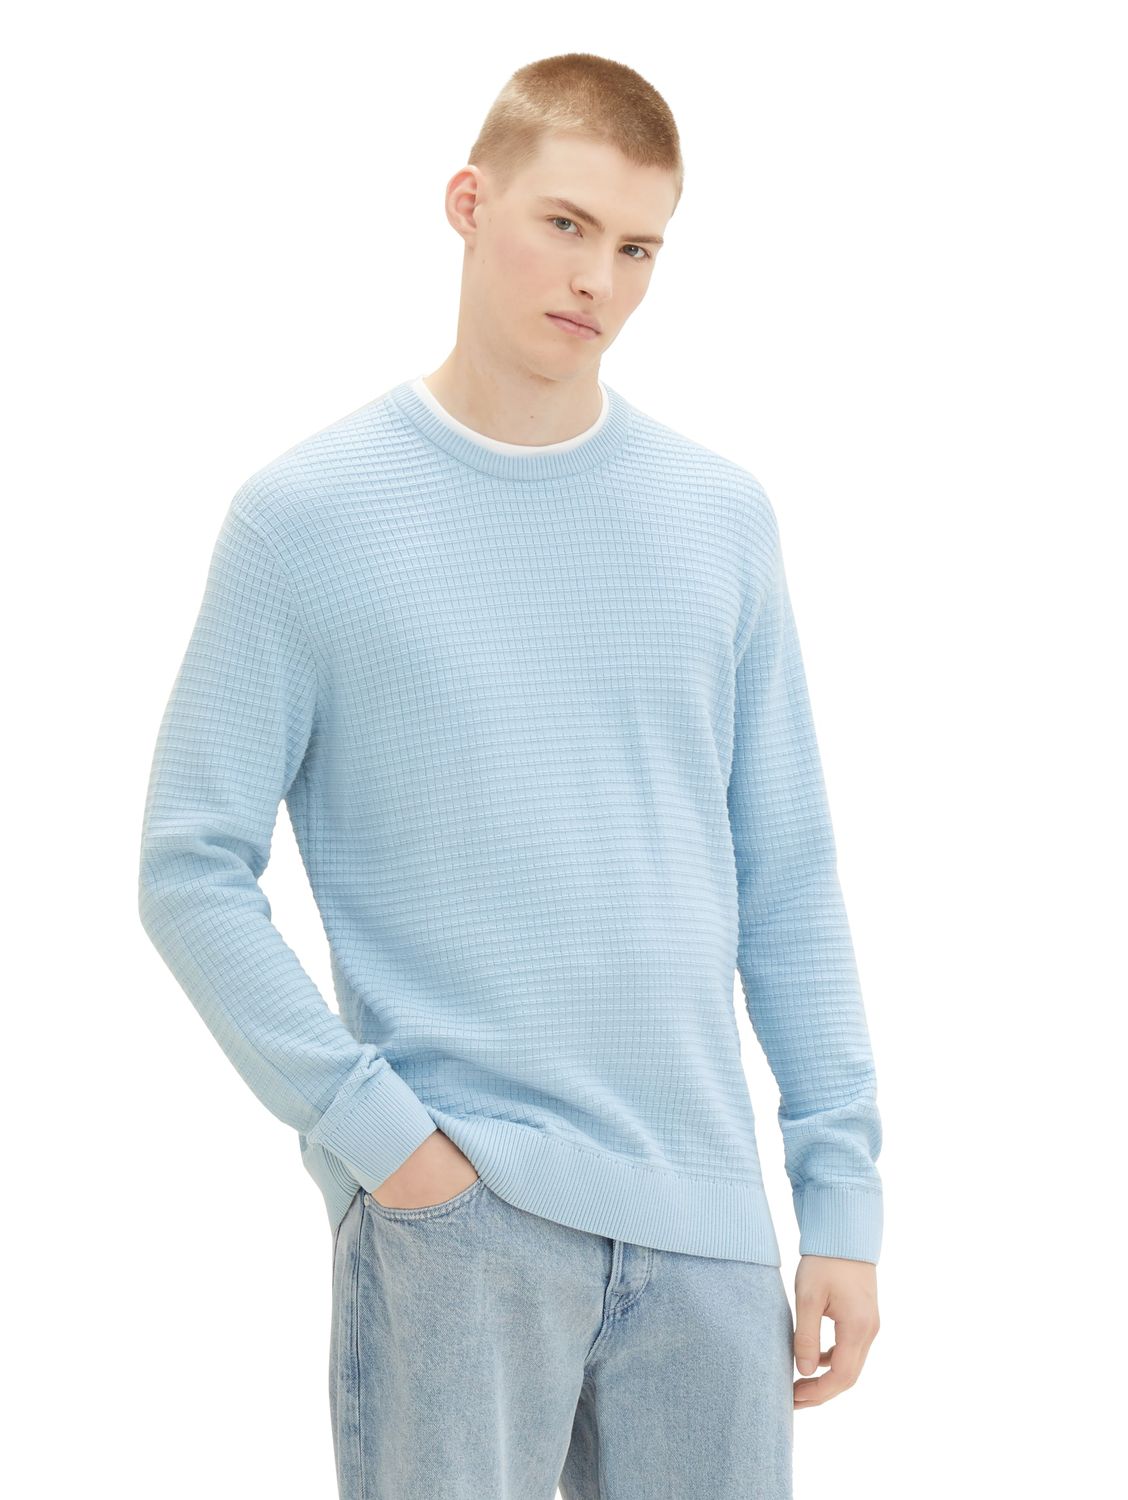 Пуловер TOM TAILOR Denim STRUCTURED DOUBLELAYER, синий пуловер tom tailor denim structured basic серый